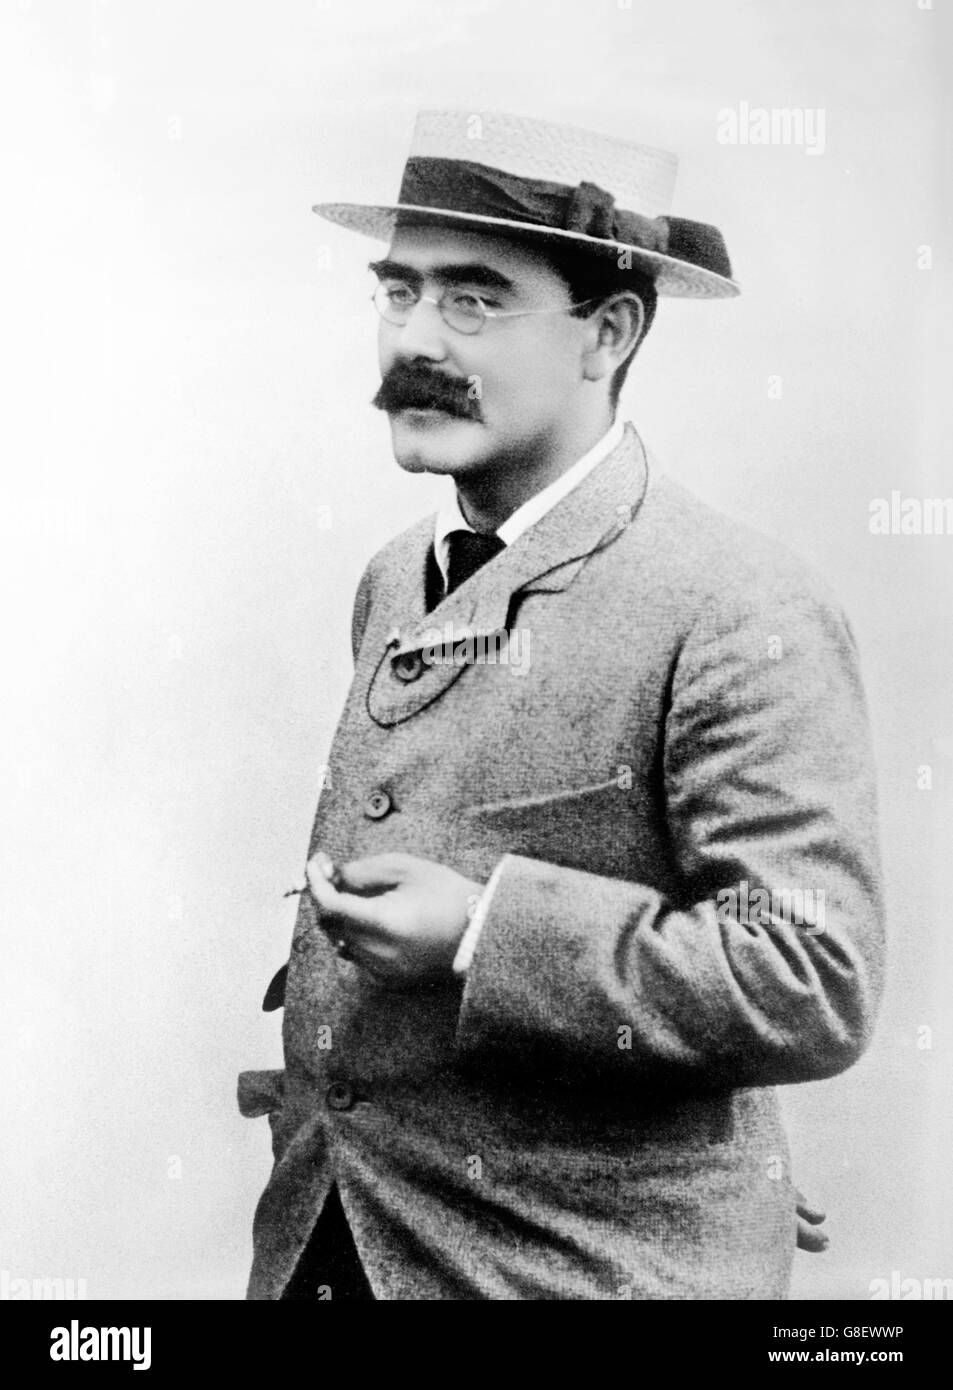 Rudyard Kipling. Portrait de l'écrivain anglais, Joseph Rudyard Kipling. Photo de Bain News Service, date inconnue Banque D'Images